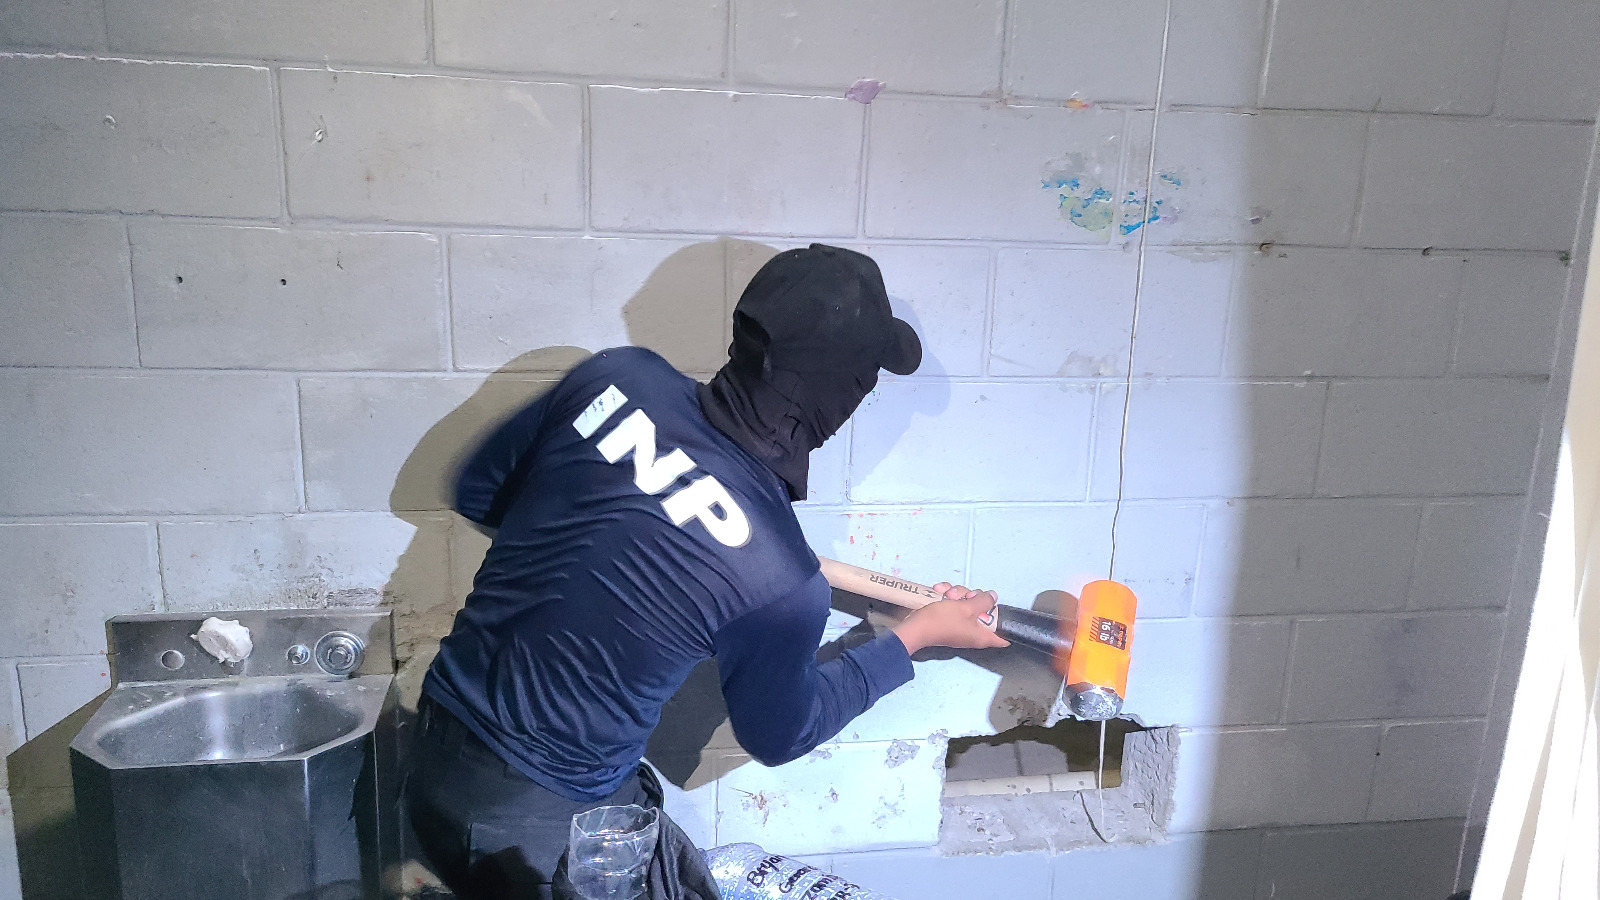  En Operación Refundación I encuentran explosivos en el Centro penal de Ilama, Santa Bárbara...